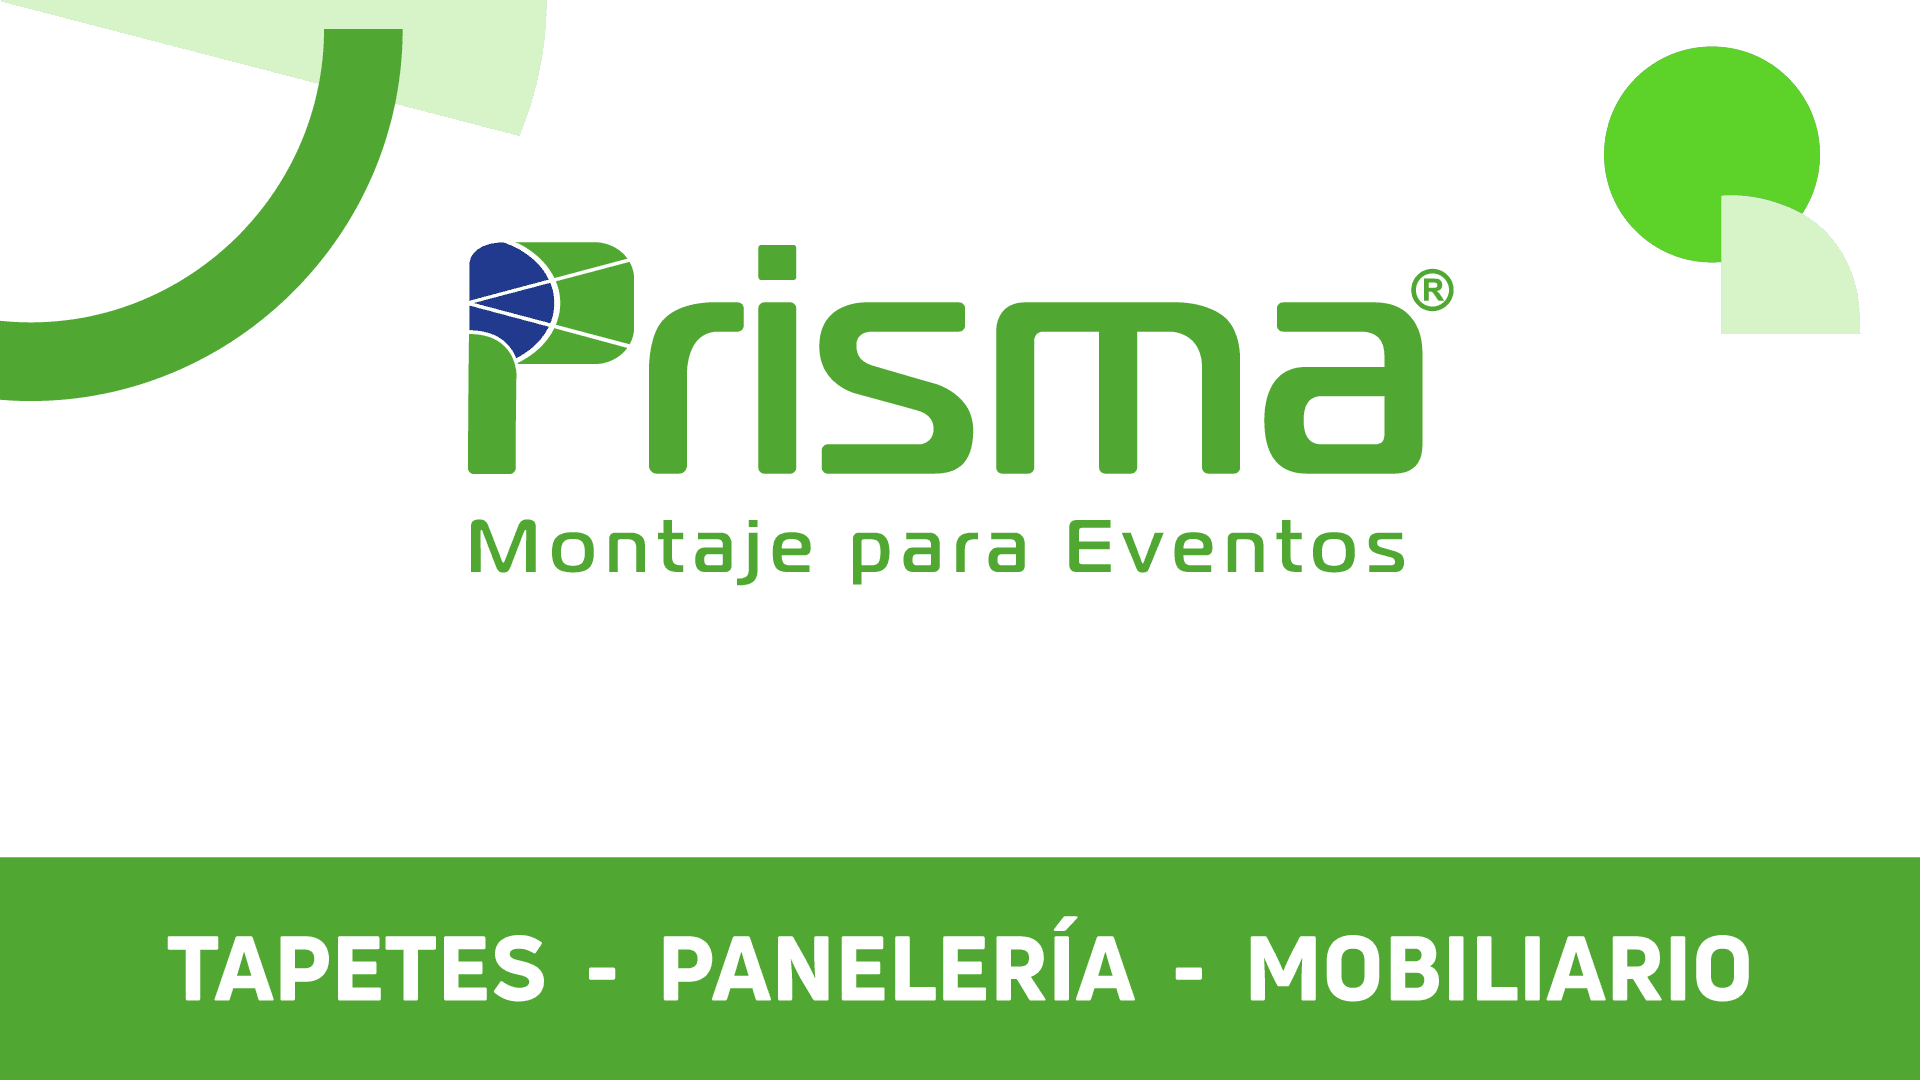 (c) Prismamontajes.com